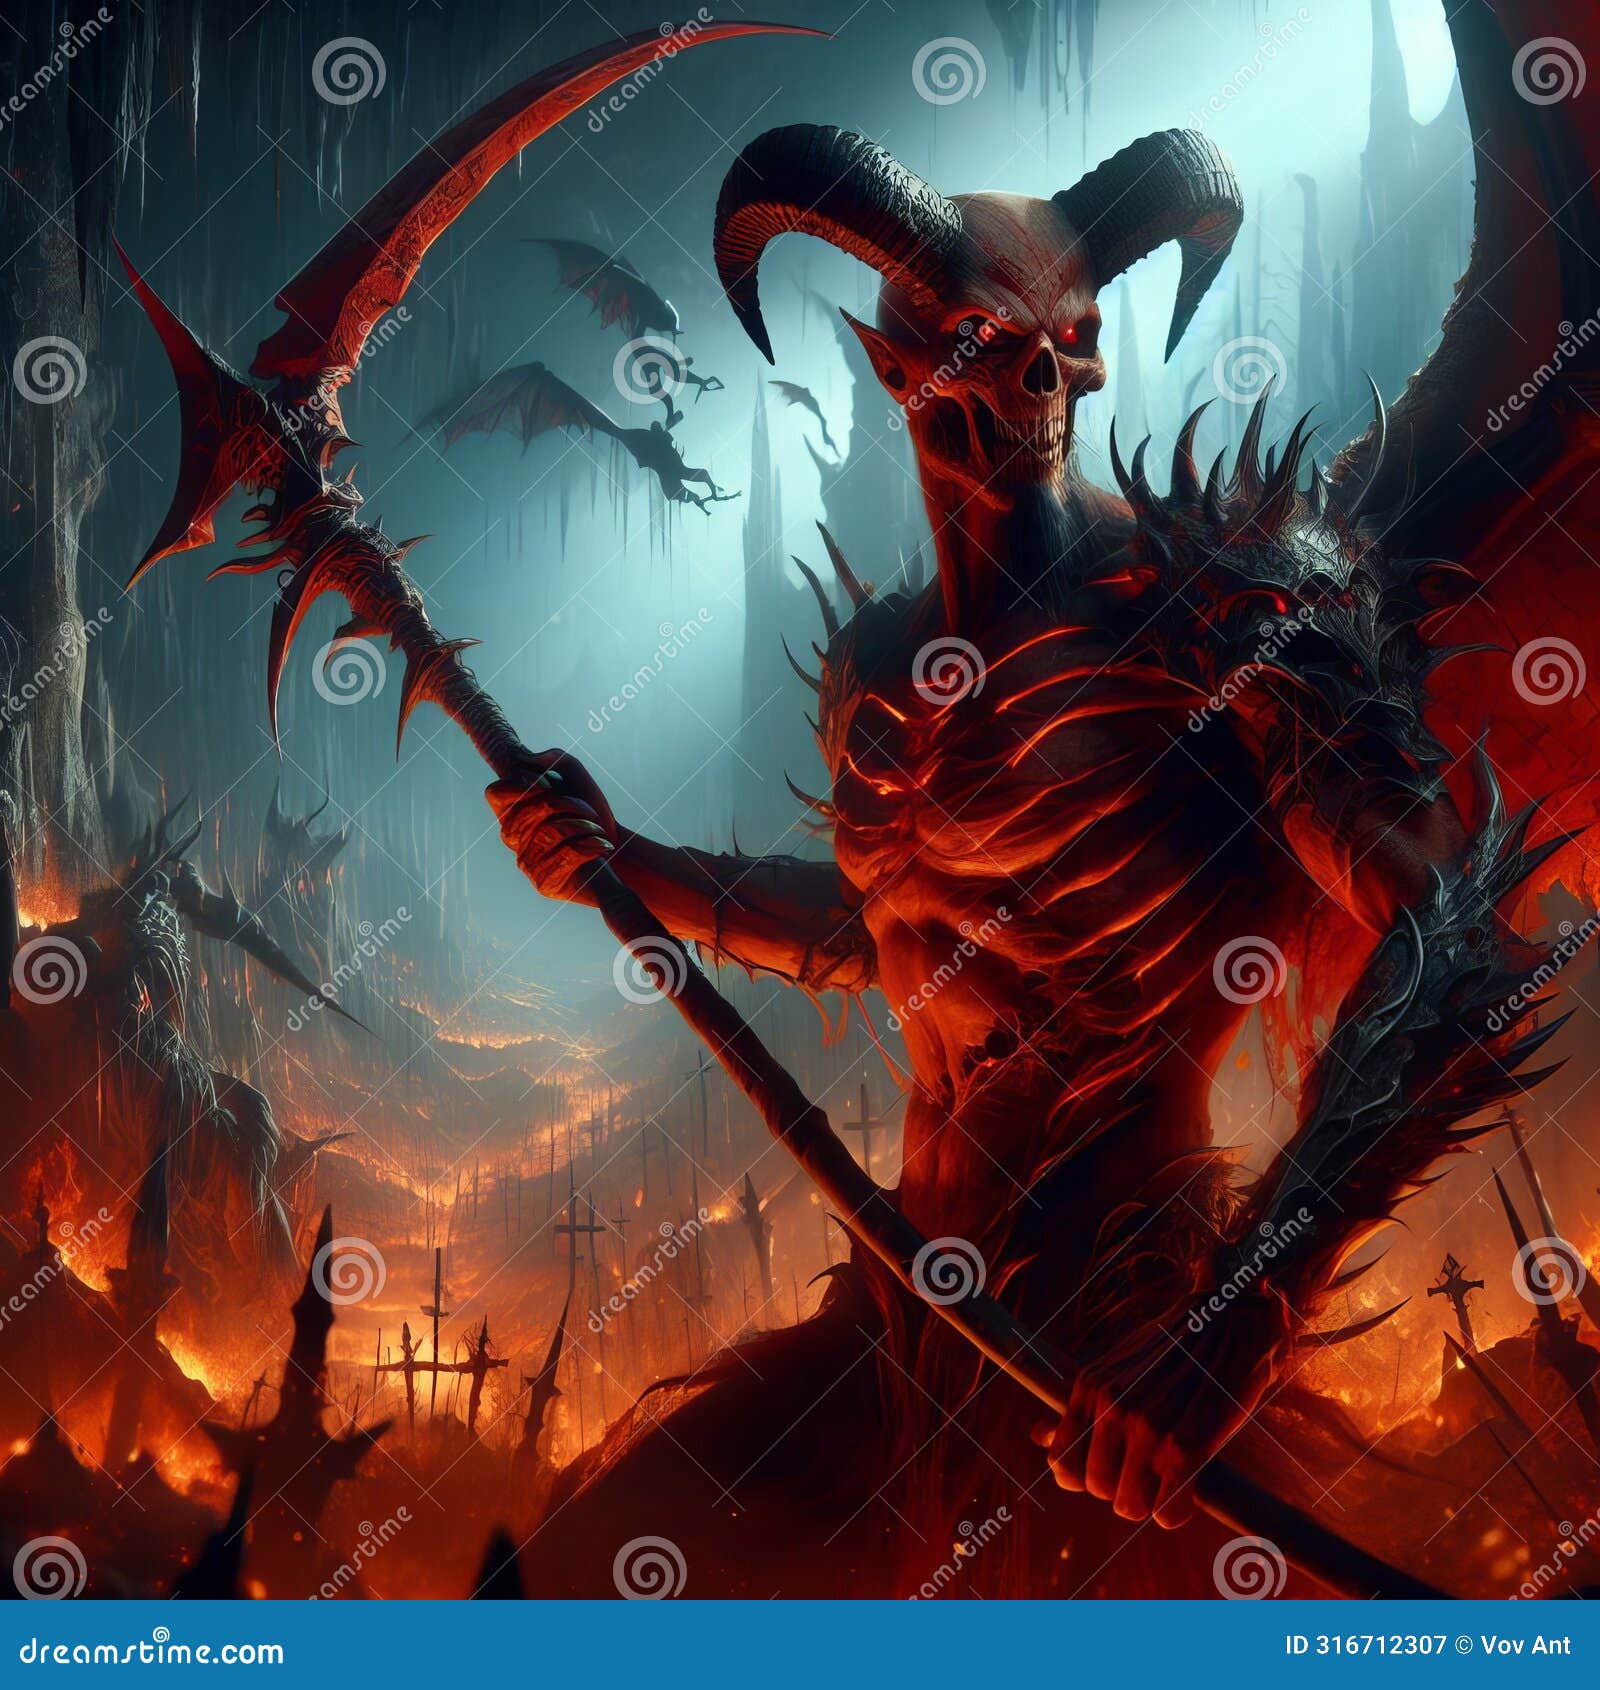 a demon warrior wielding a demonic scythe in a hellish underor